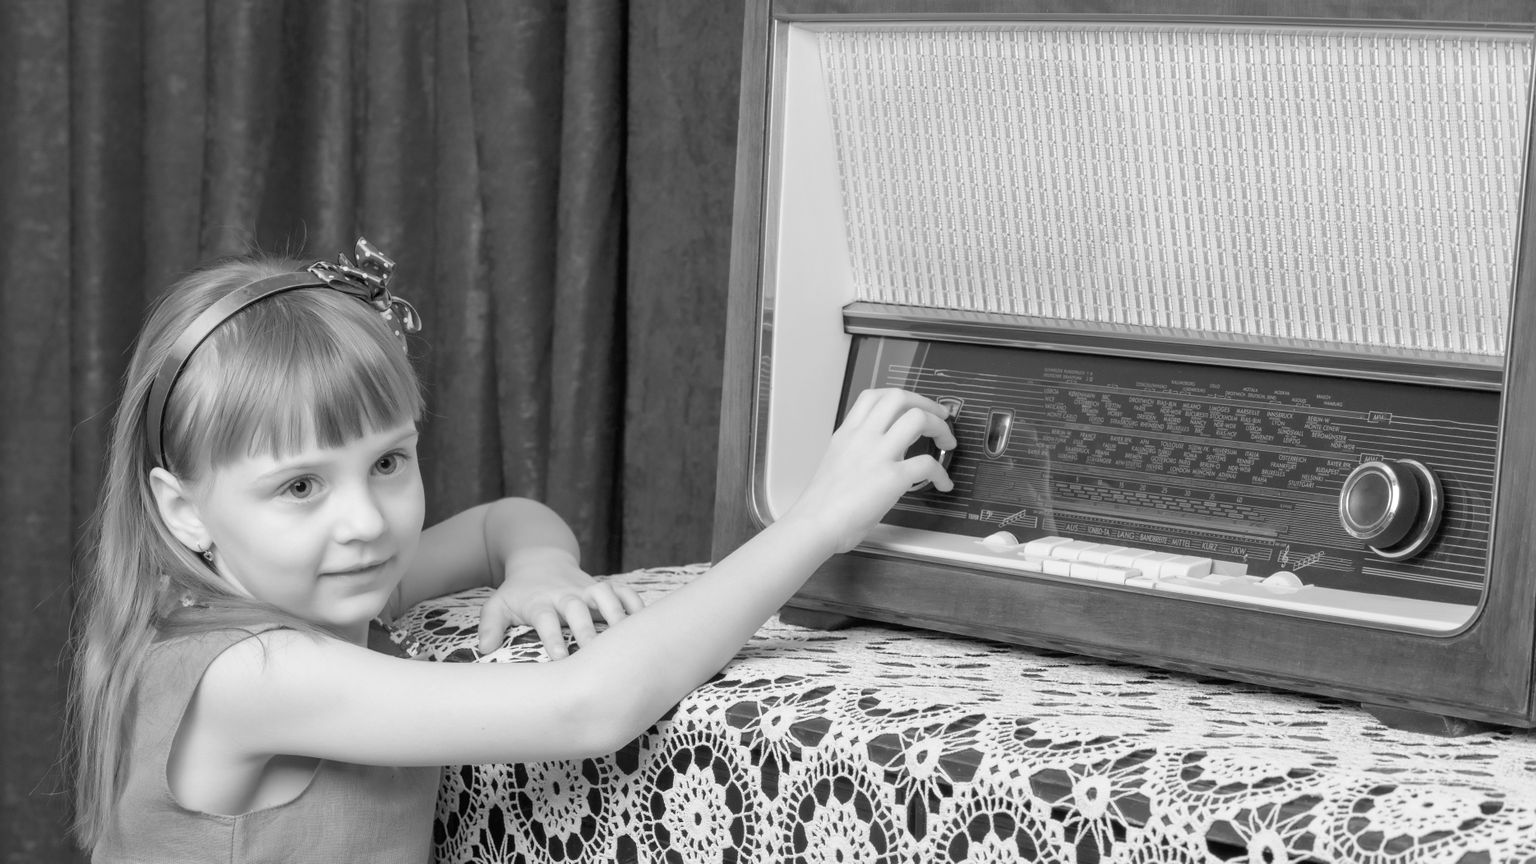 Võib-olla leidub sul kodus ka sarnane vana raadio? Küsi vanematelt abi ja äkki saate selle käima.